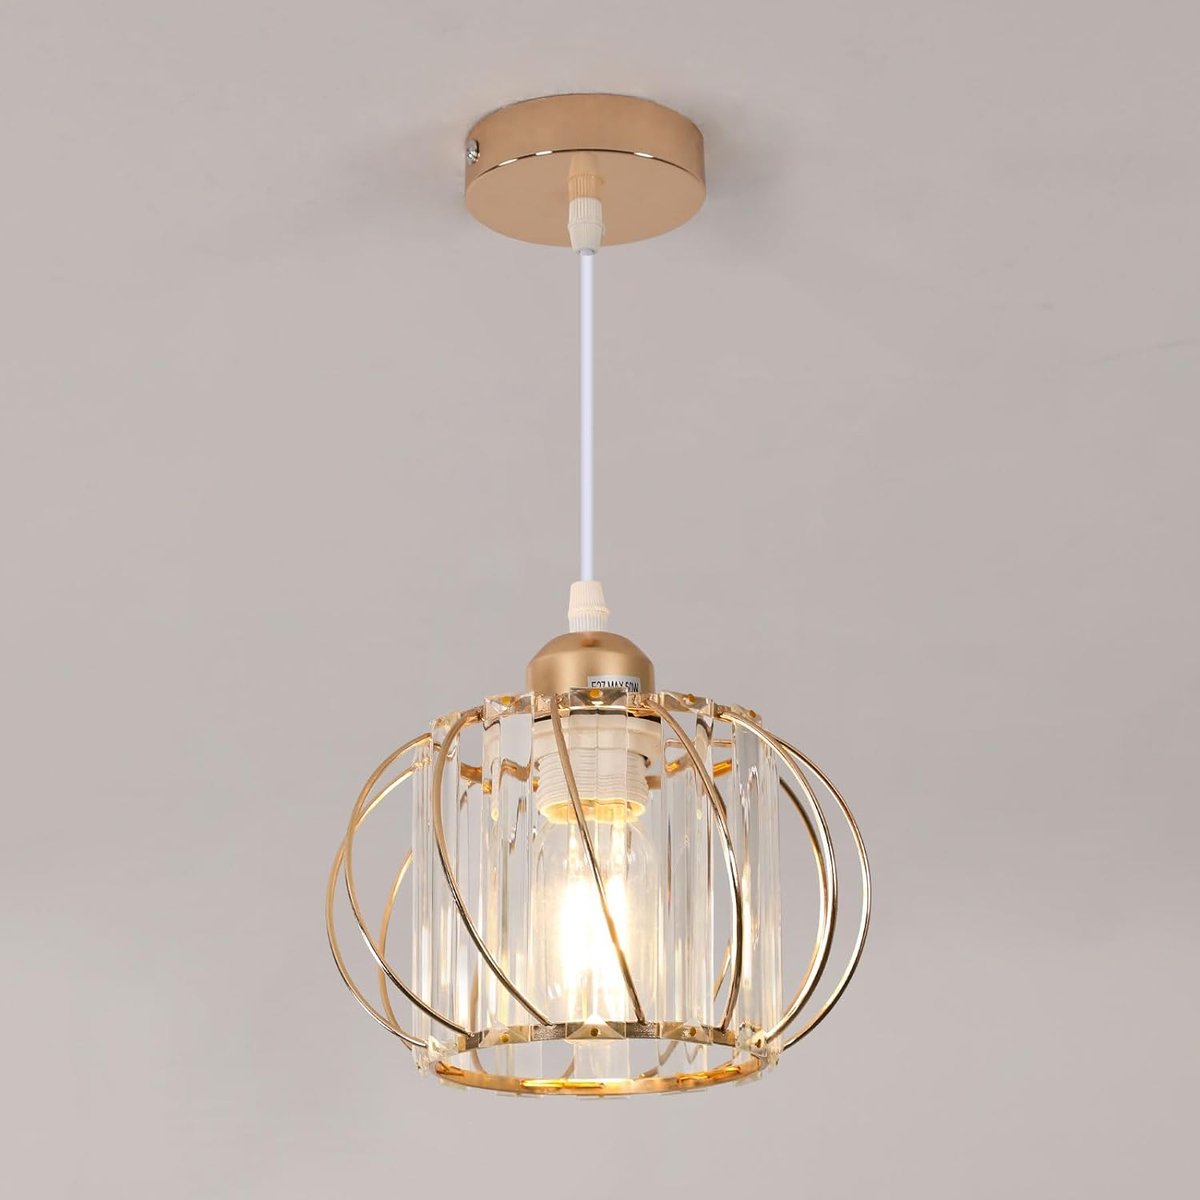 Delaveek-Vintage kristallen ijzeren hanglamp- E27 - Goud - 13 * 13 * 18 cm(lamp niet inbegrepen)